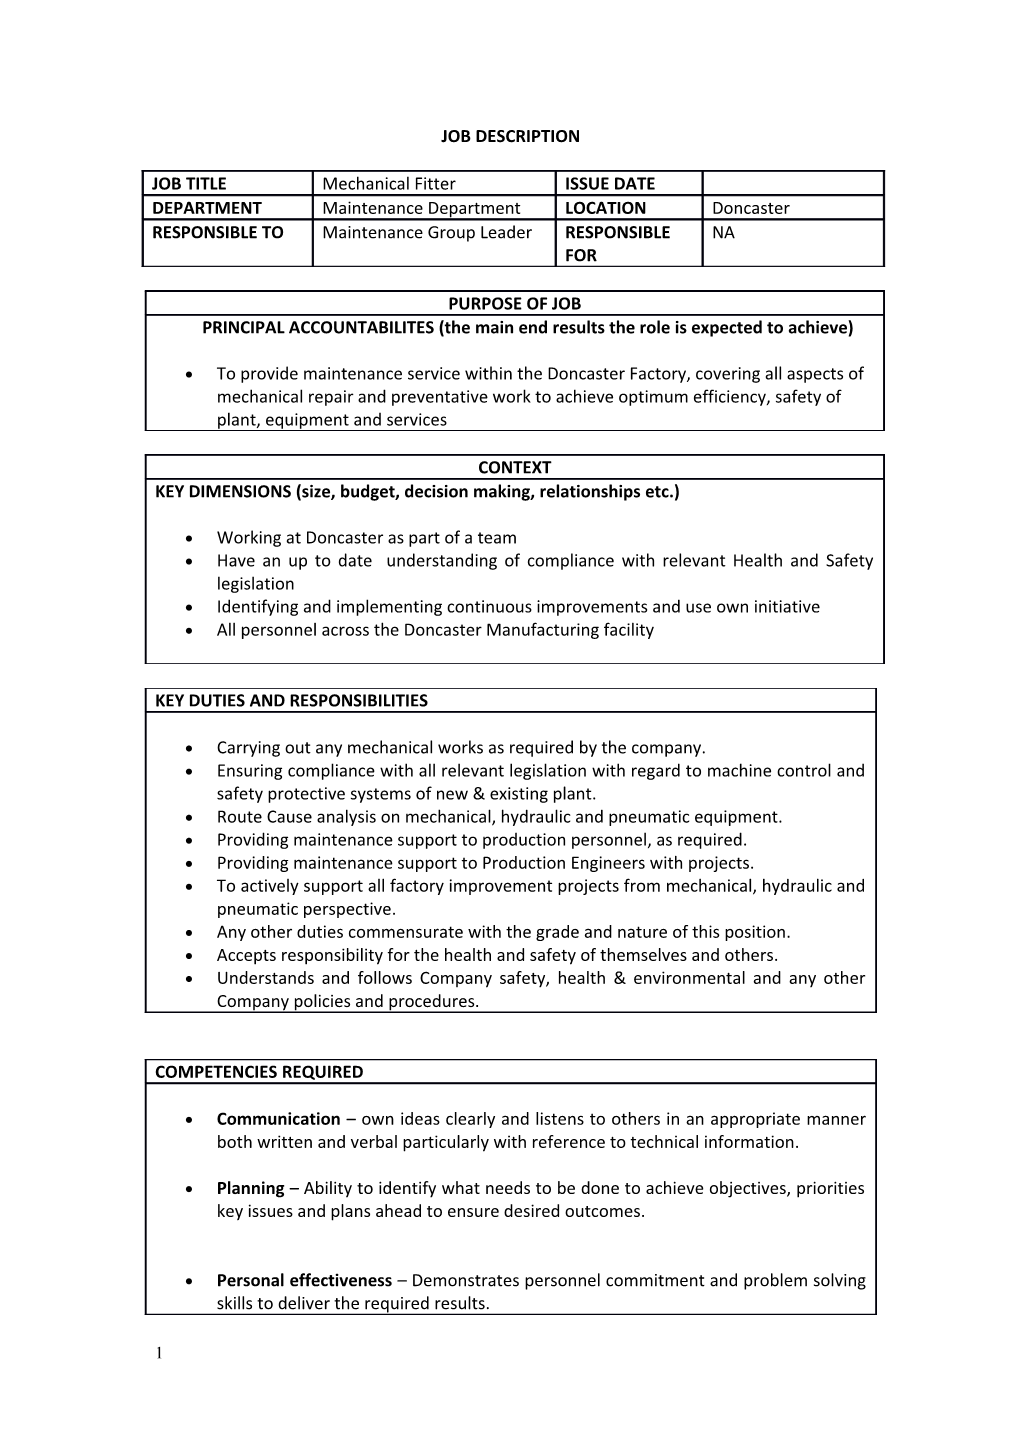 Job Description Form s15